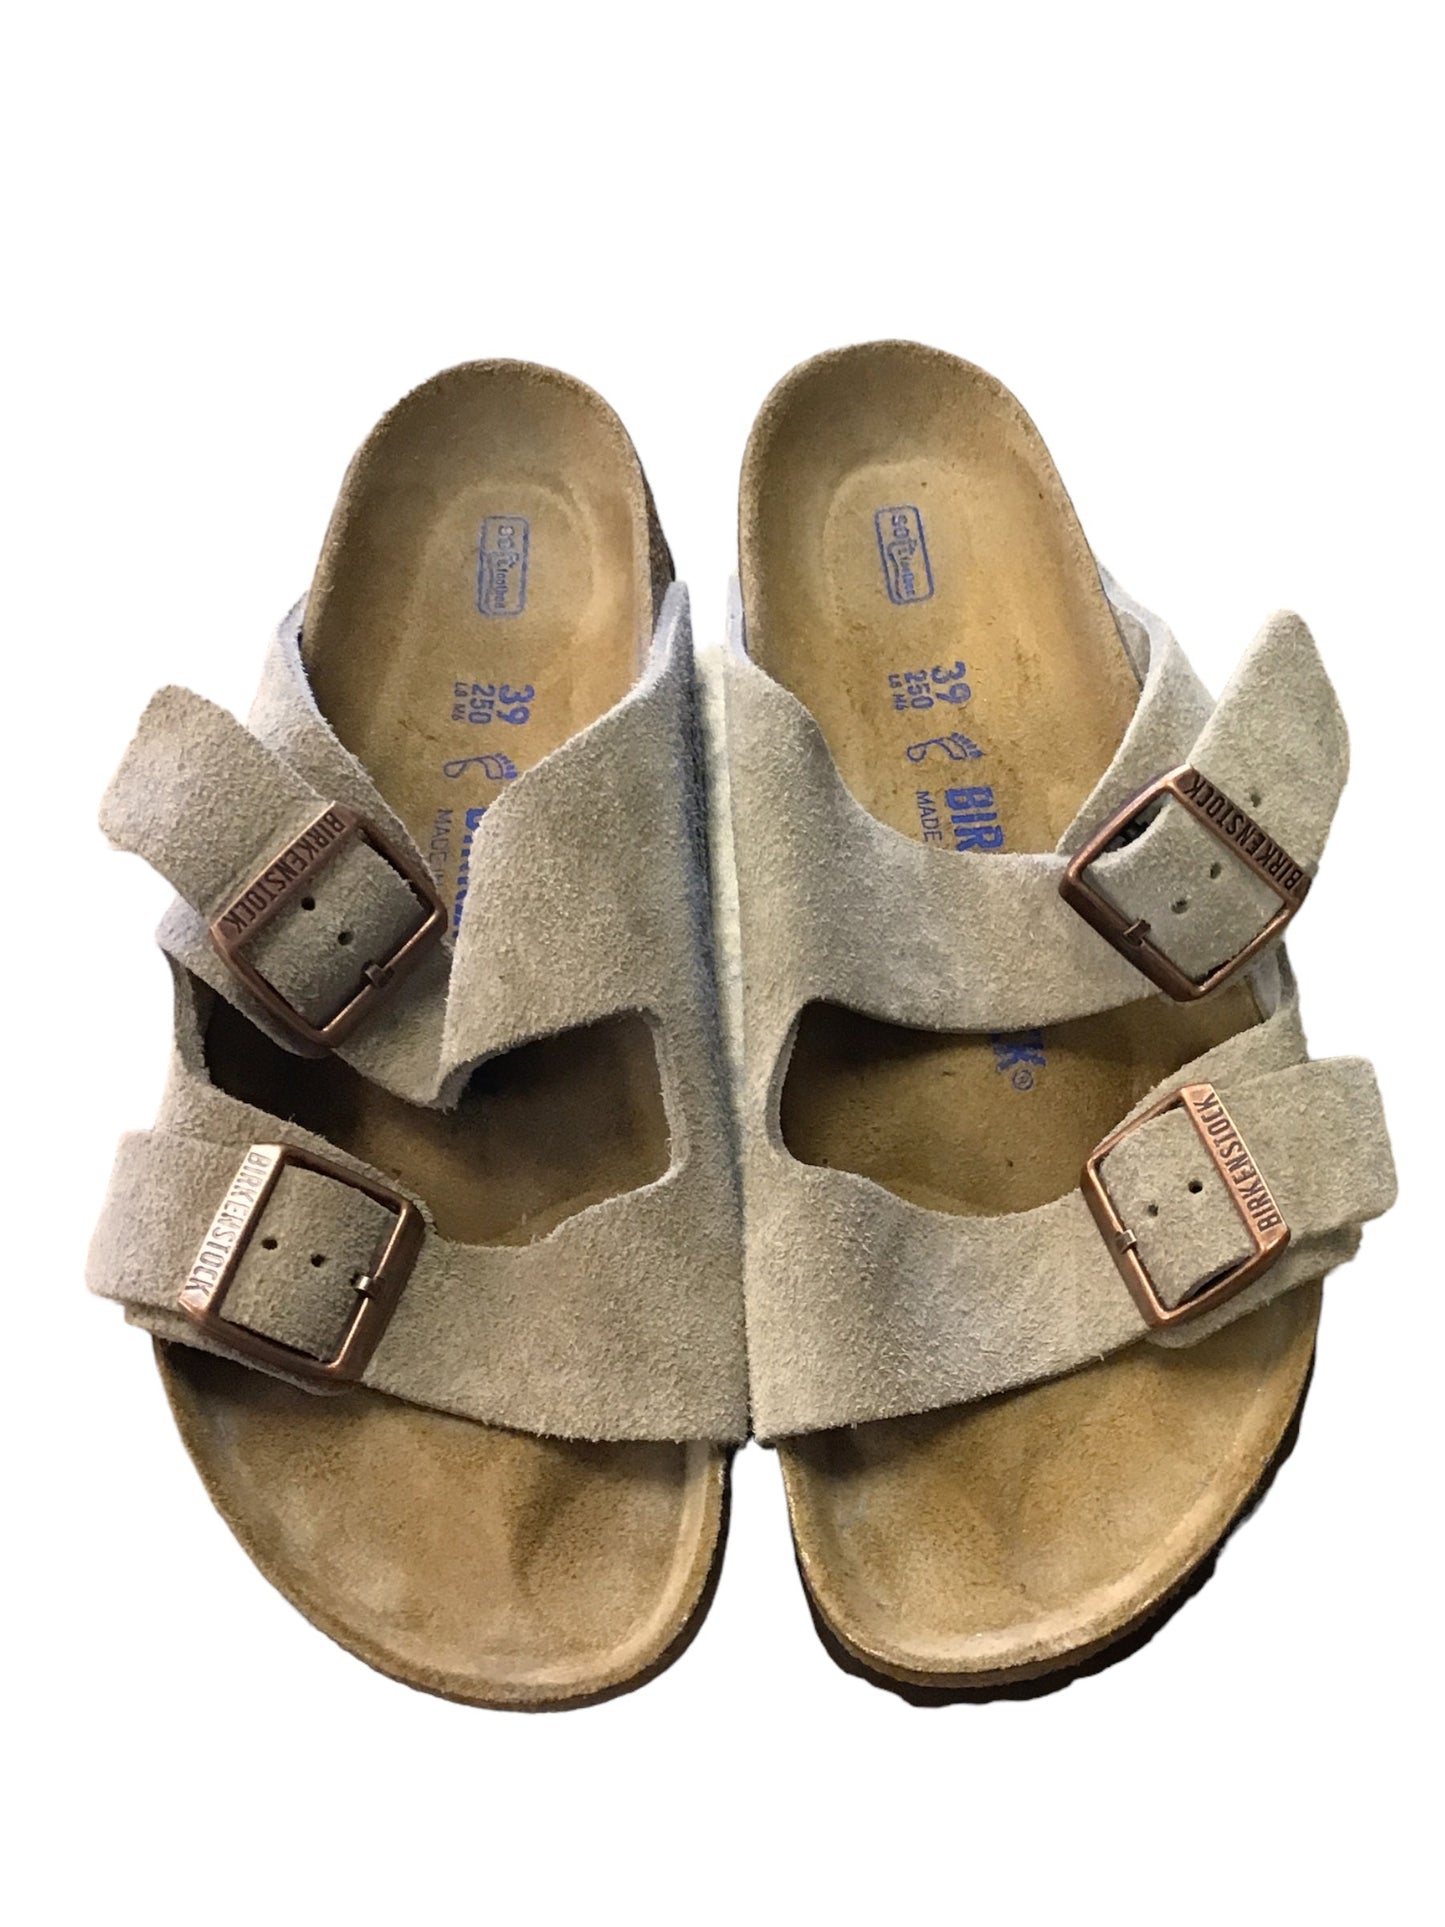 Grey Sandals Flats Birkenstock, Size 8